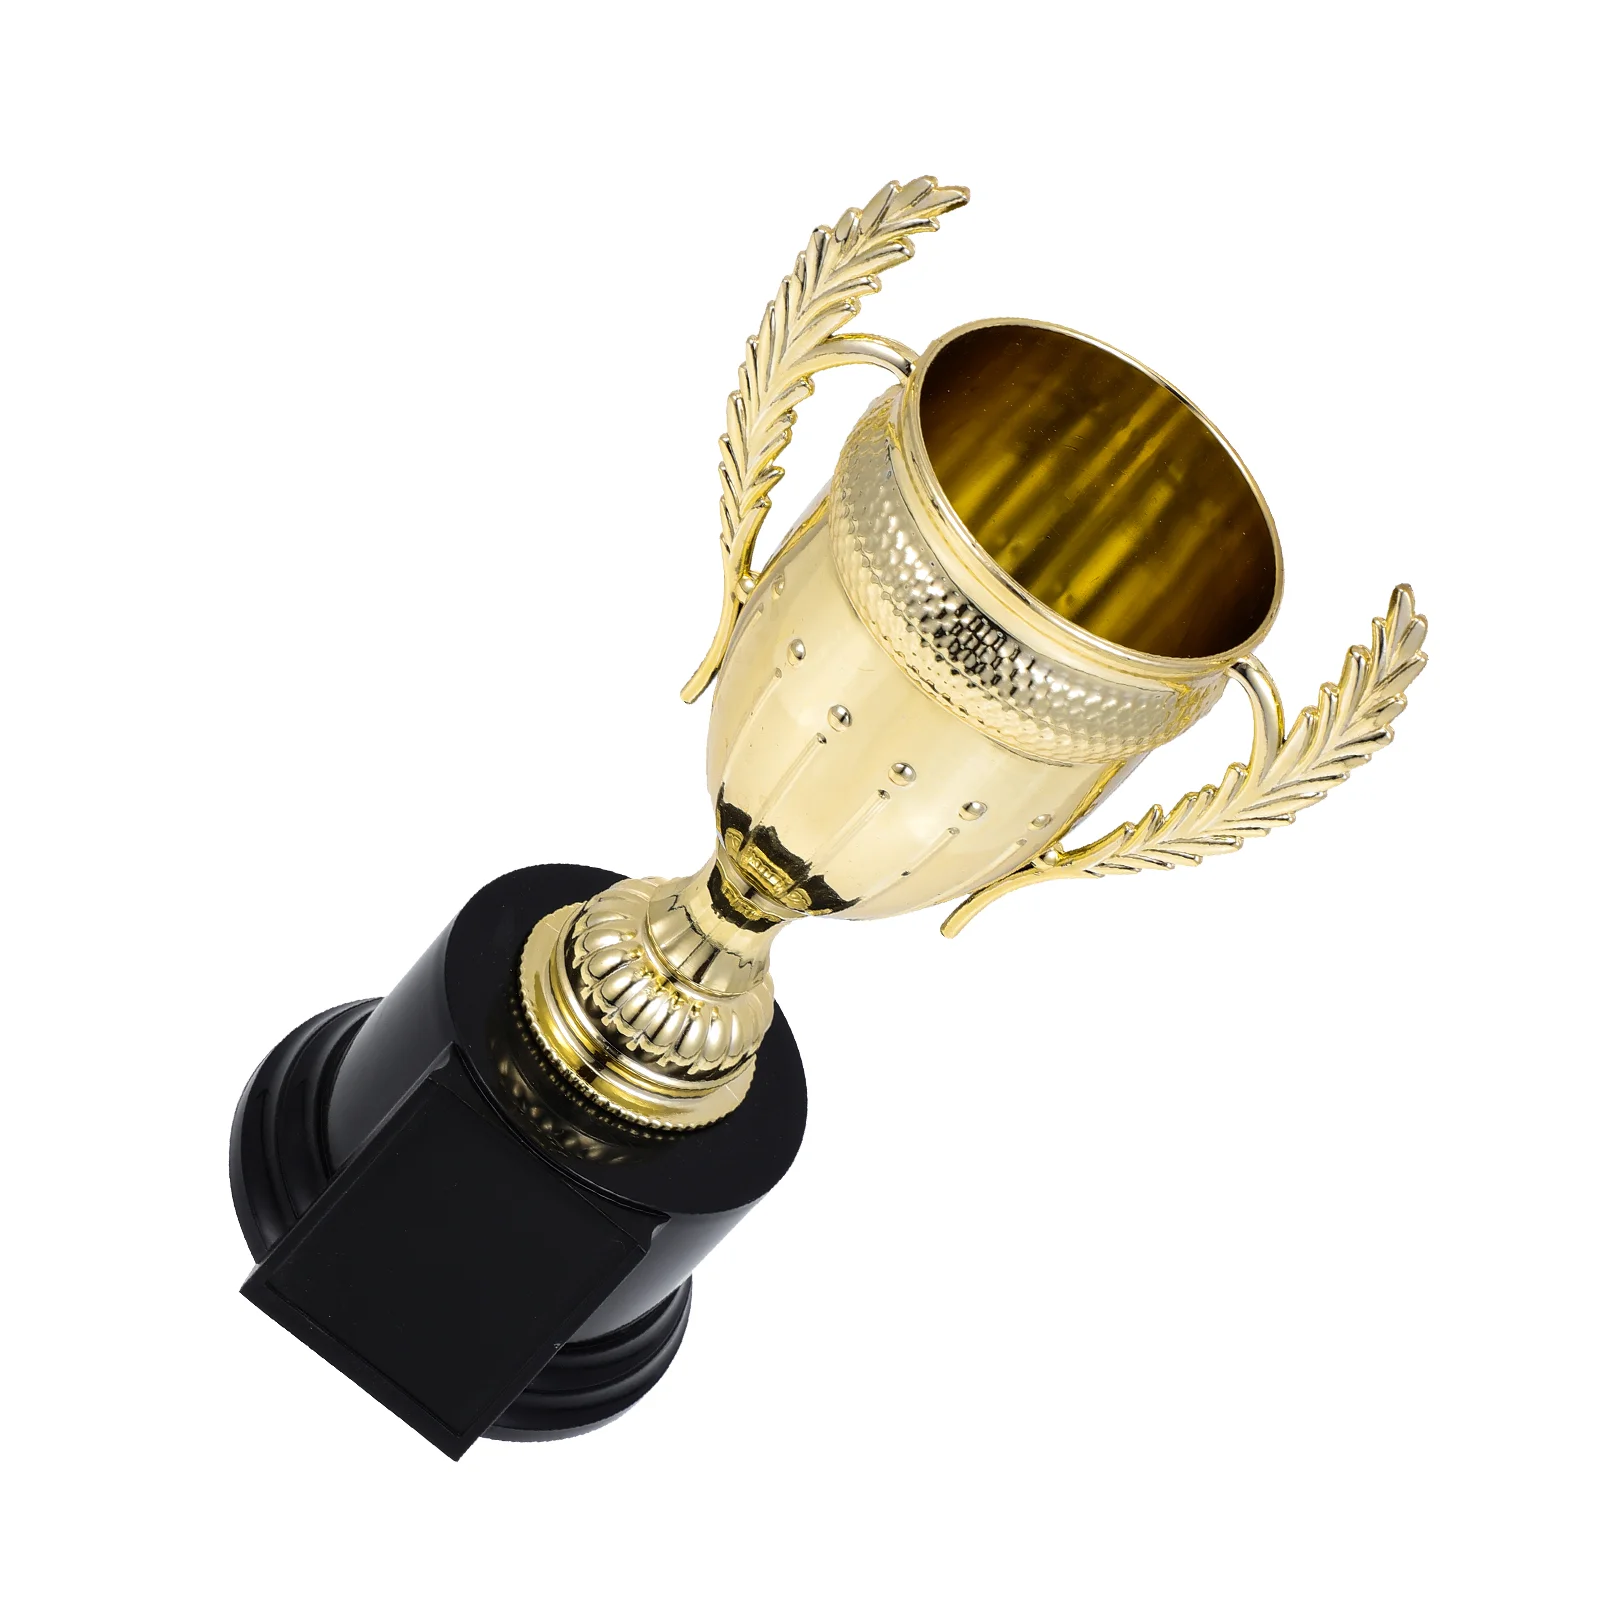 

Трофей Кубок награды тропики Детские виннерсоревнования золотые награды Детские Кубки игра Футбол